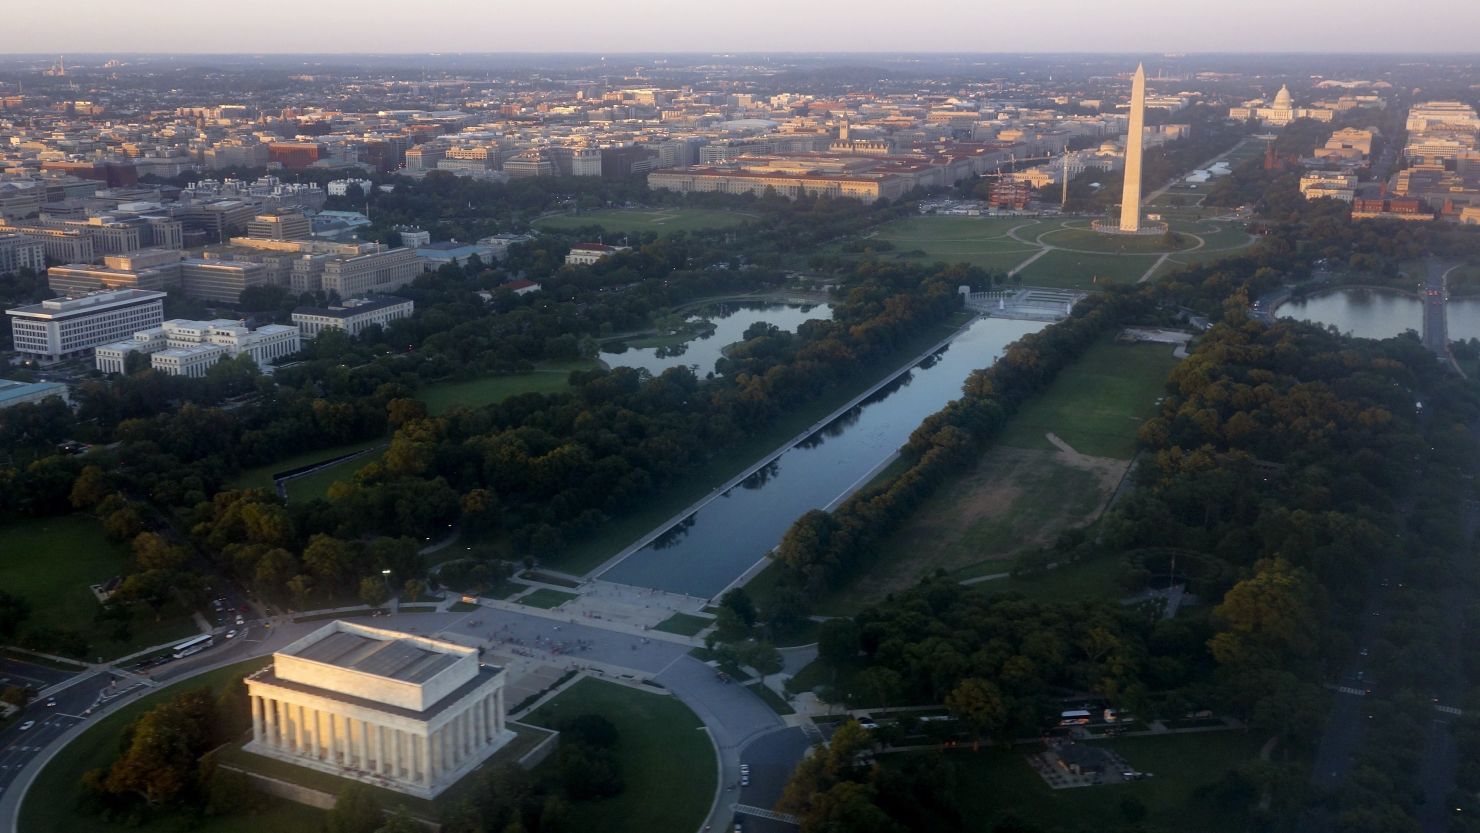 File photo of Washington, DC